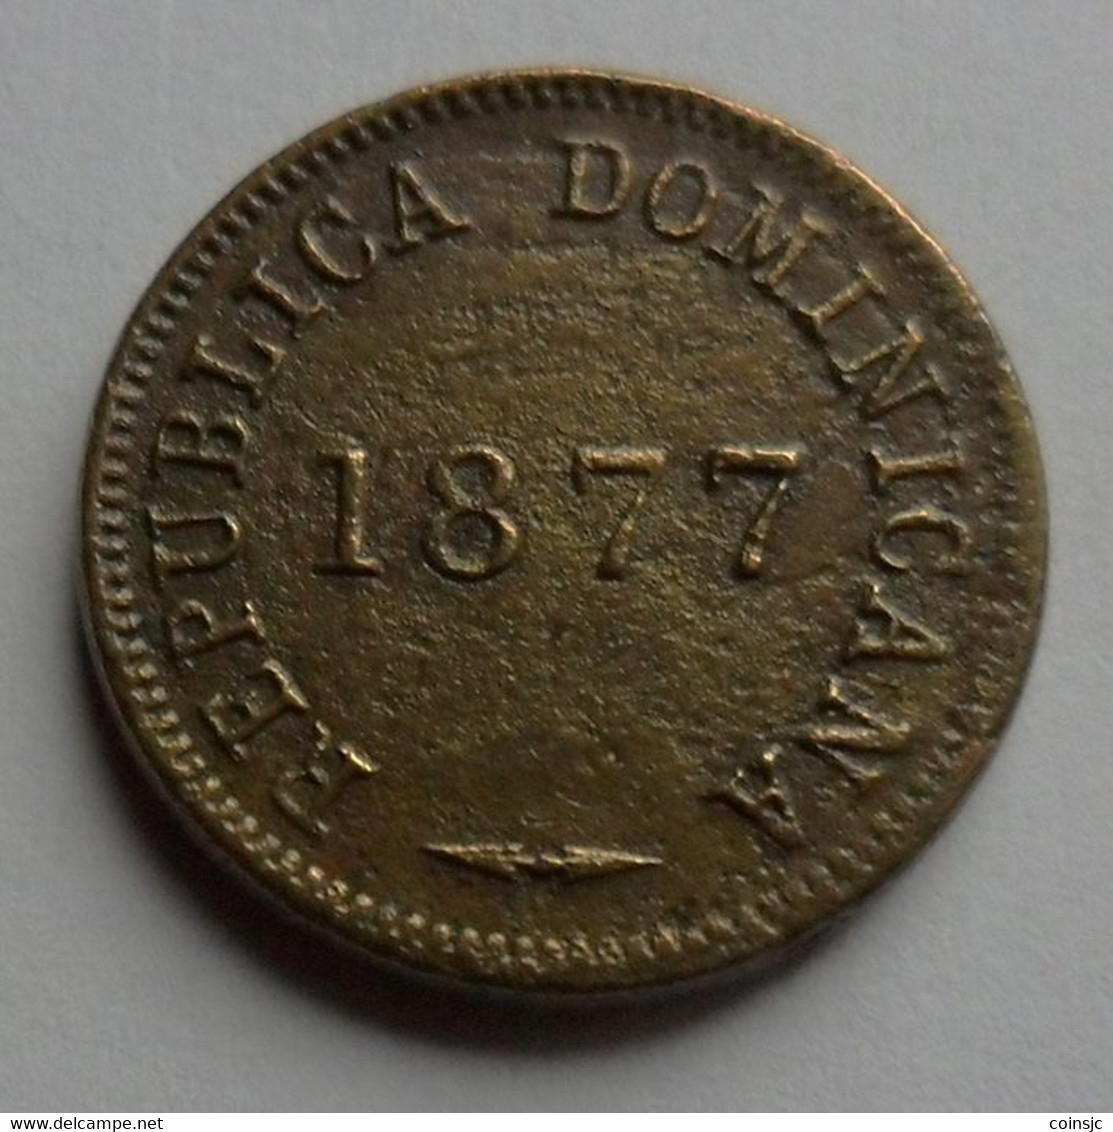 DOMINICAN  REPUBLIC -  1  CENTAVO - 1877 - Dominicana